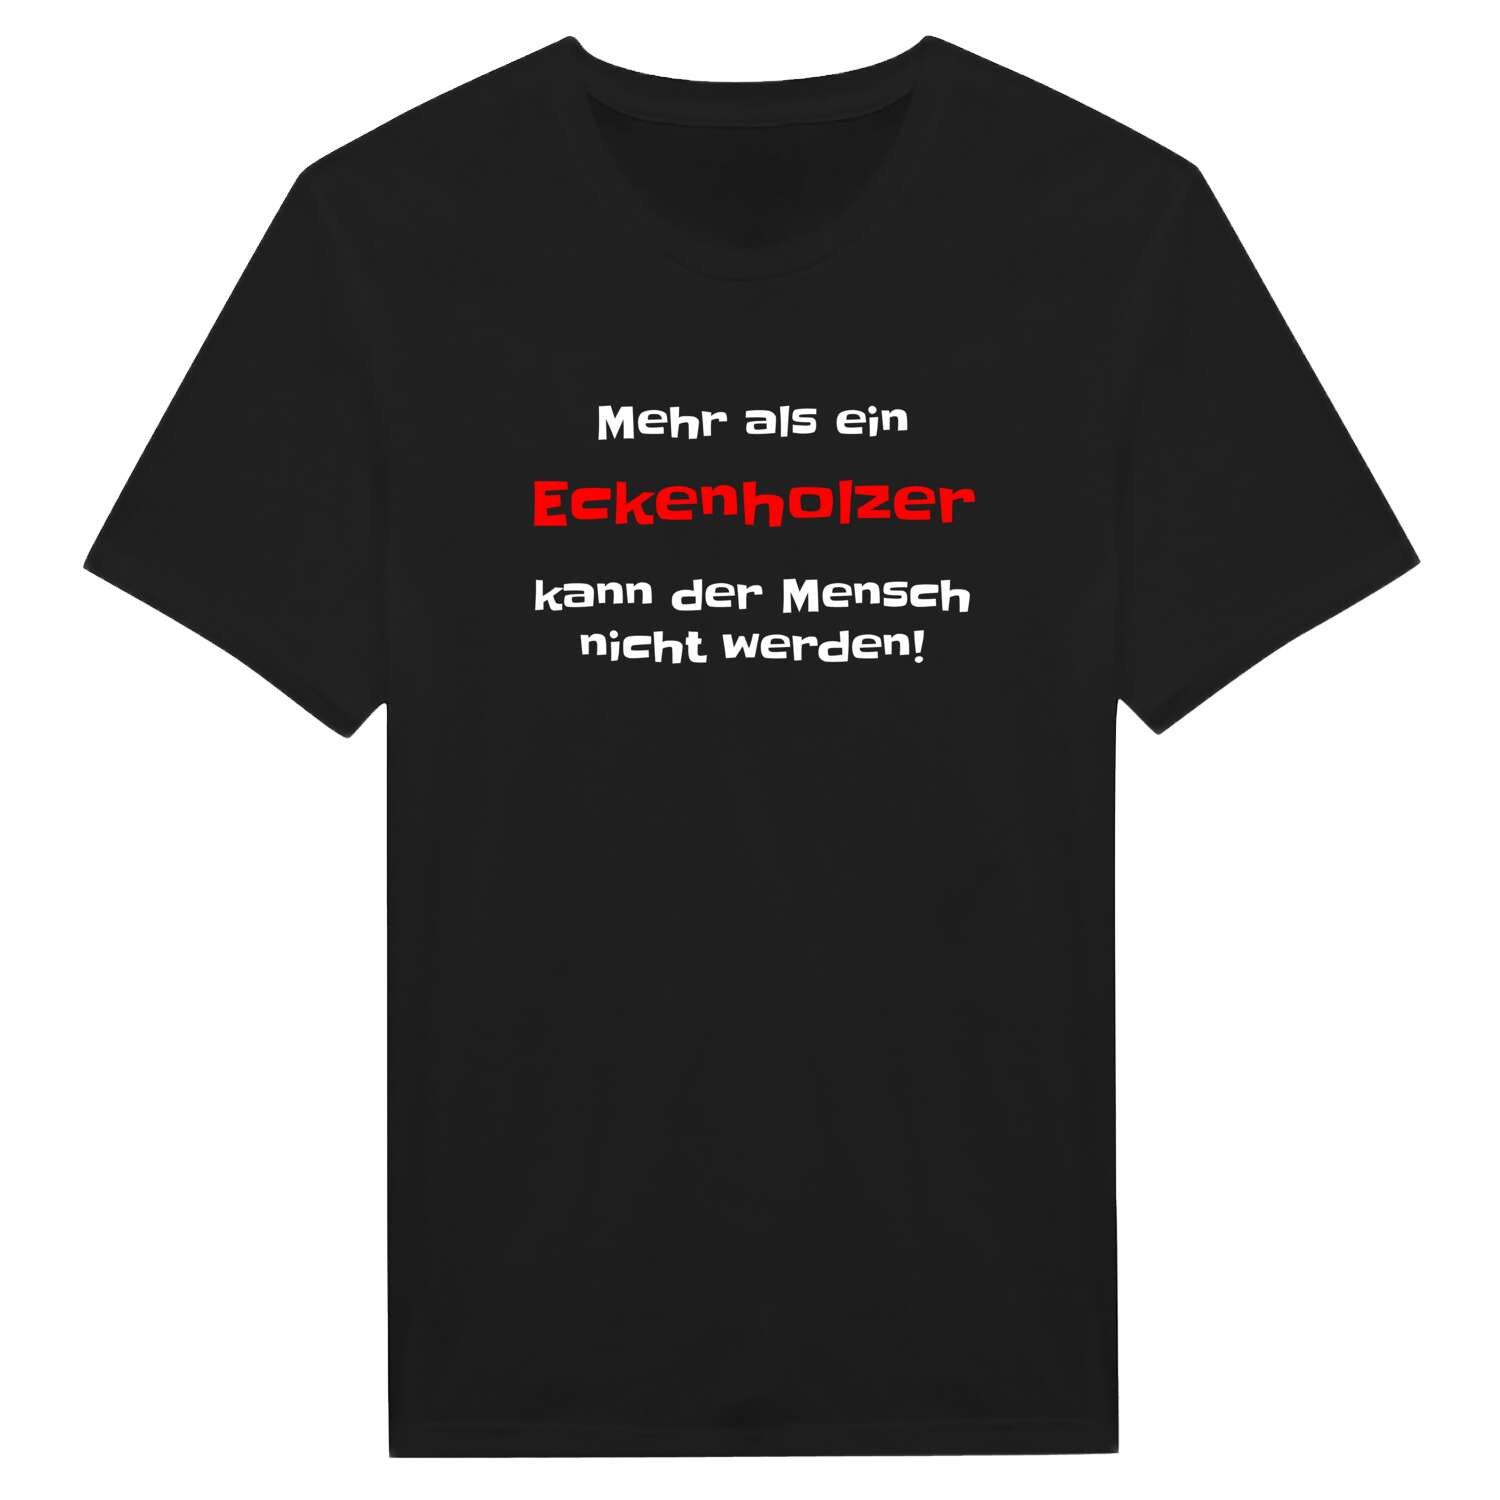 Eckenholz T-Shirt »Mehr als ein«